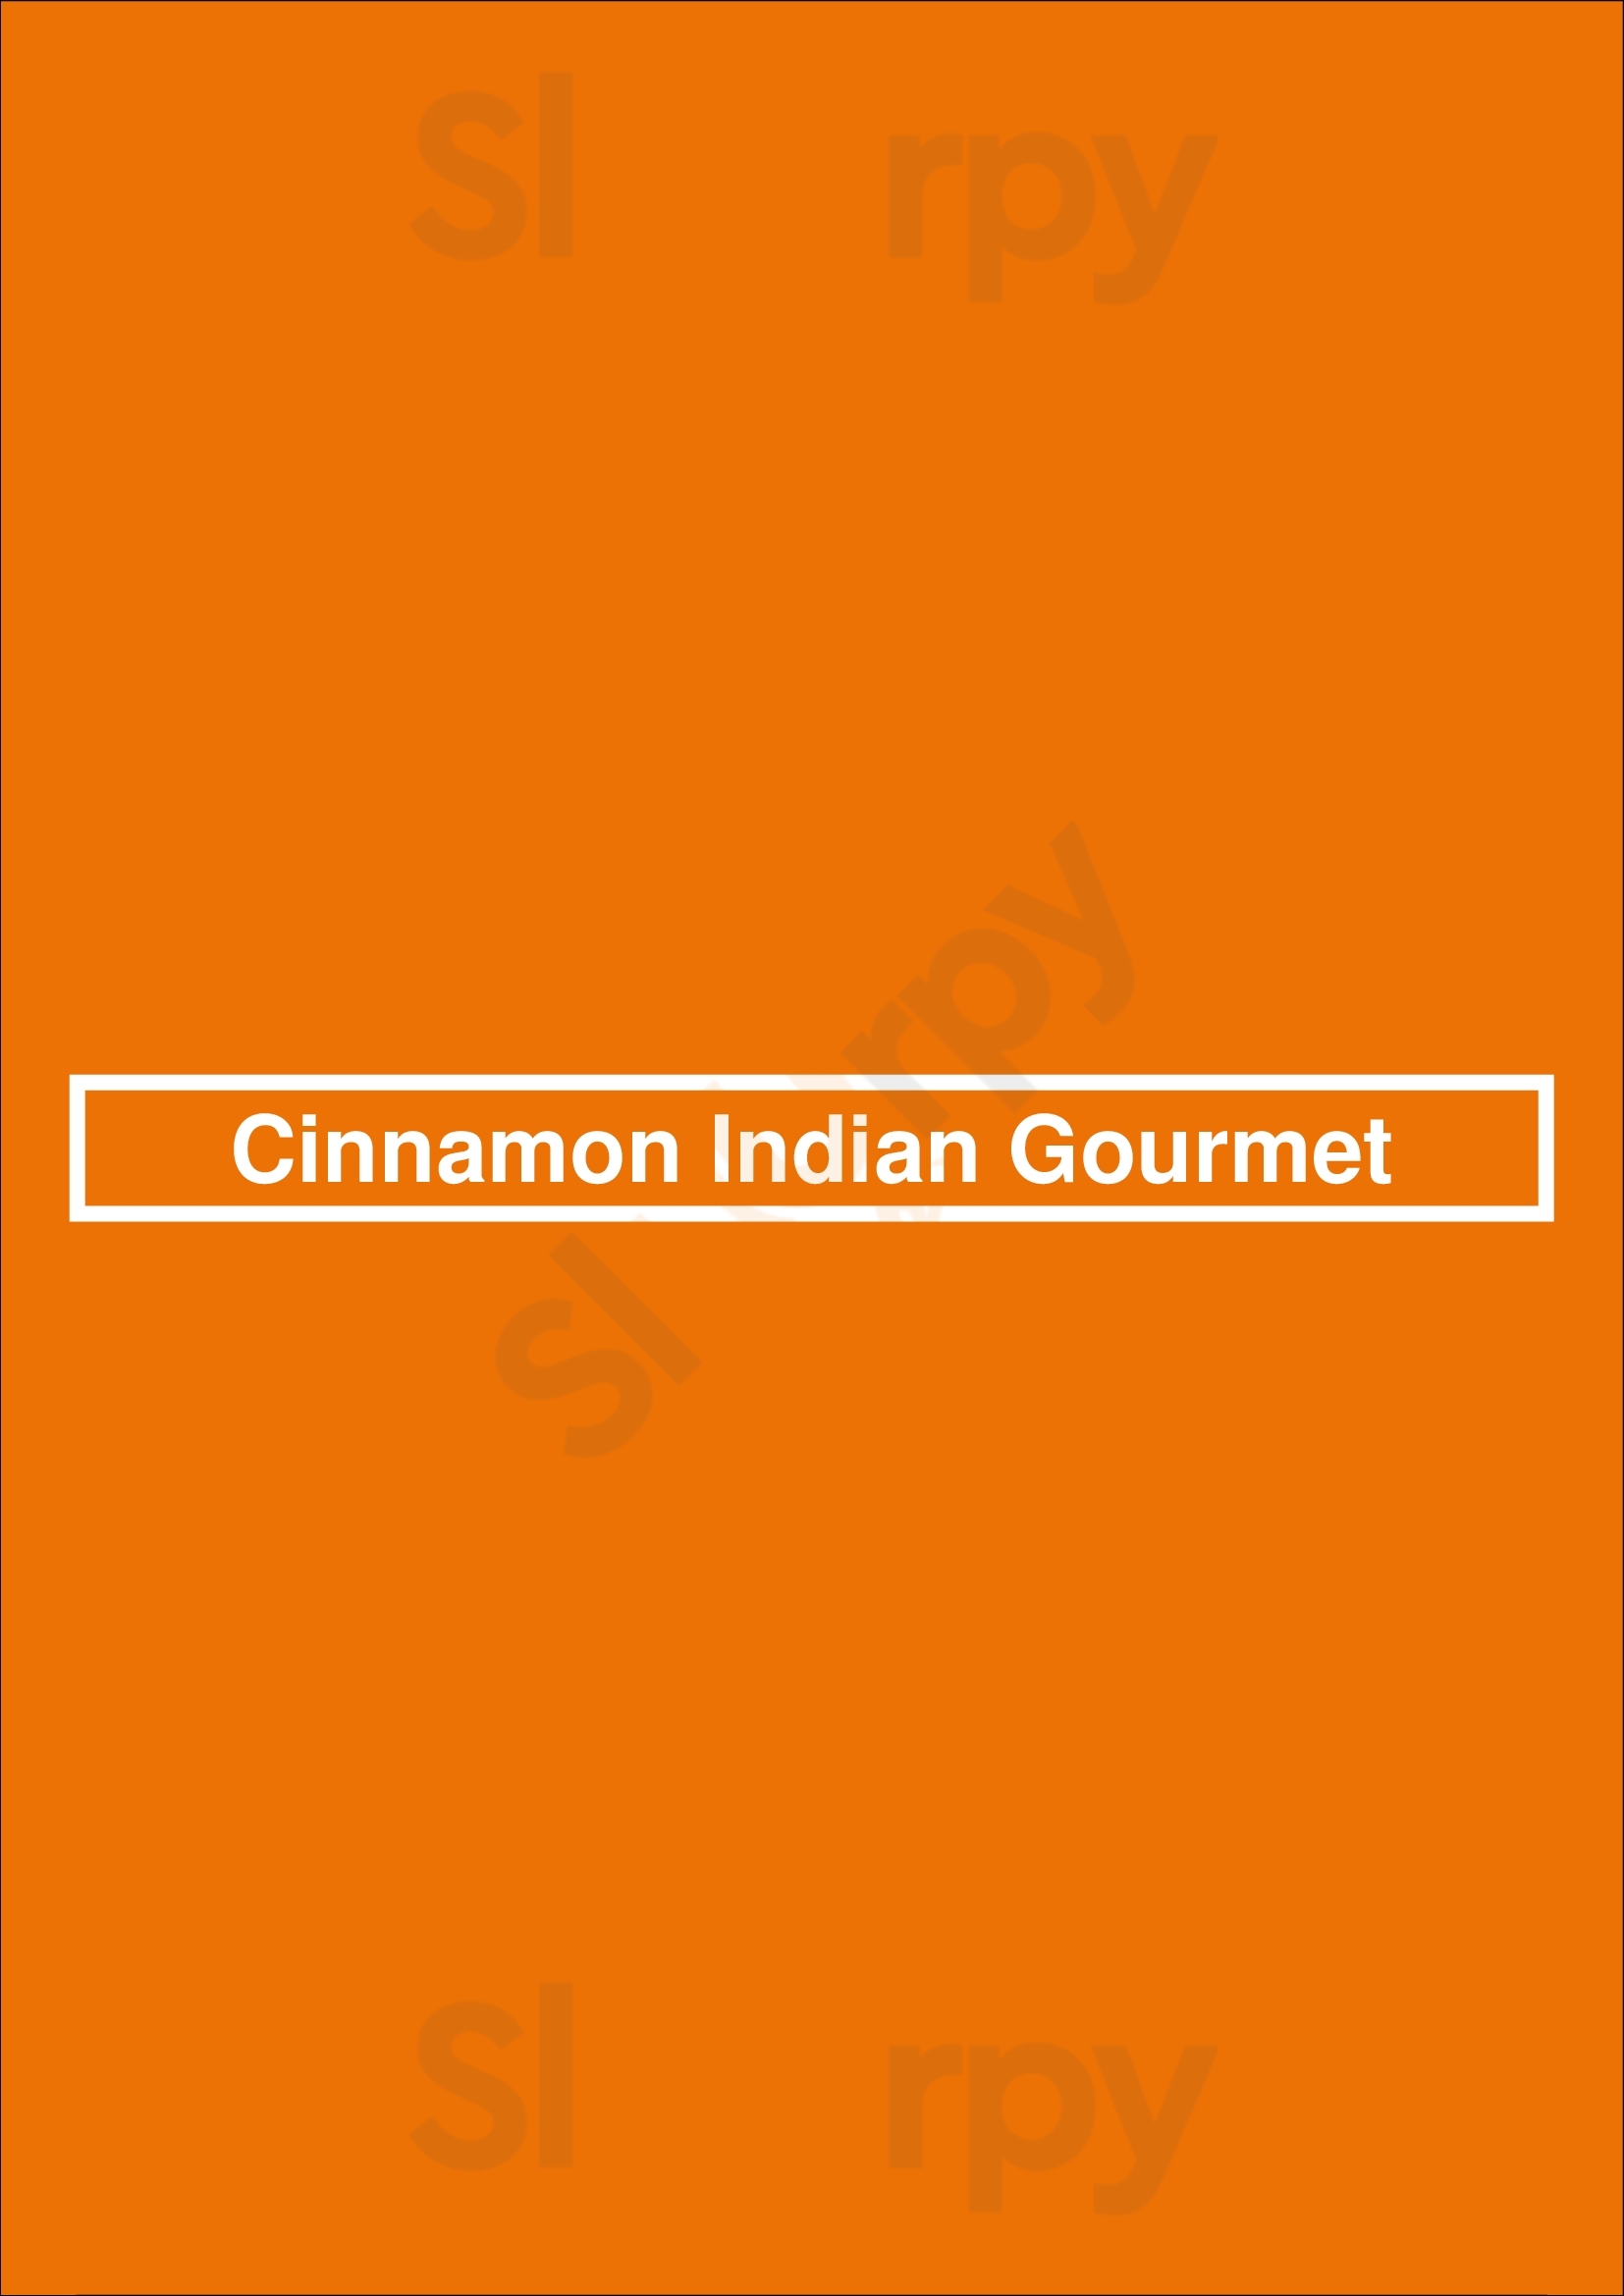 Cinnamon Indian Gourmet Hobart Menu - 1